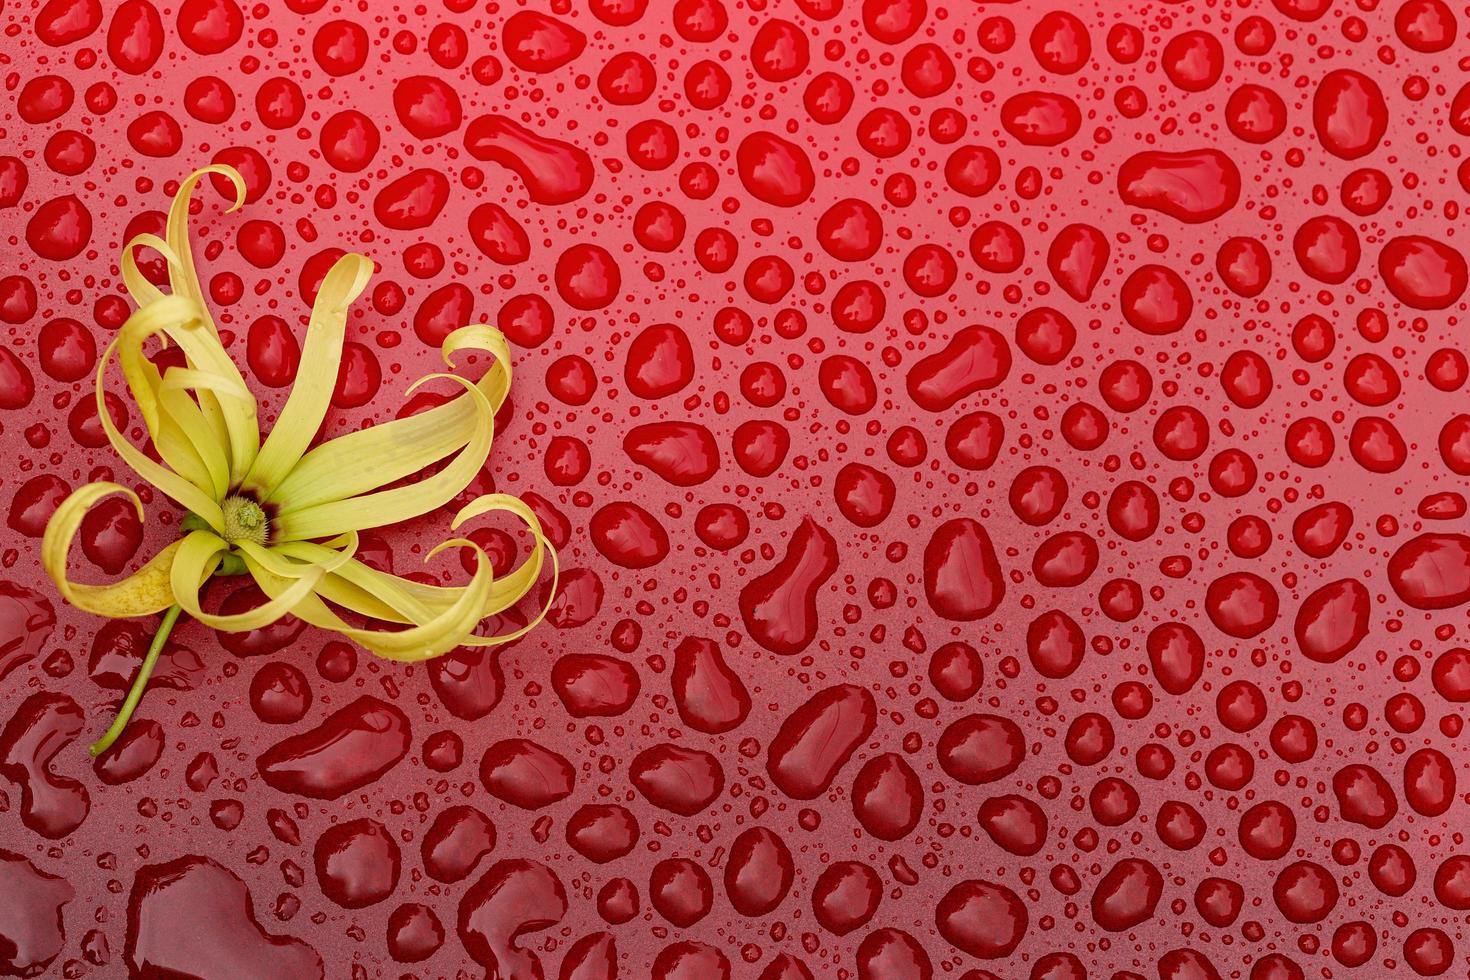 pequenas flores na água vermelha caem fundo preto foto